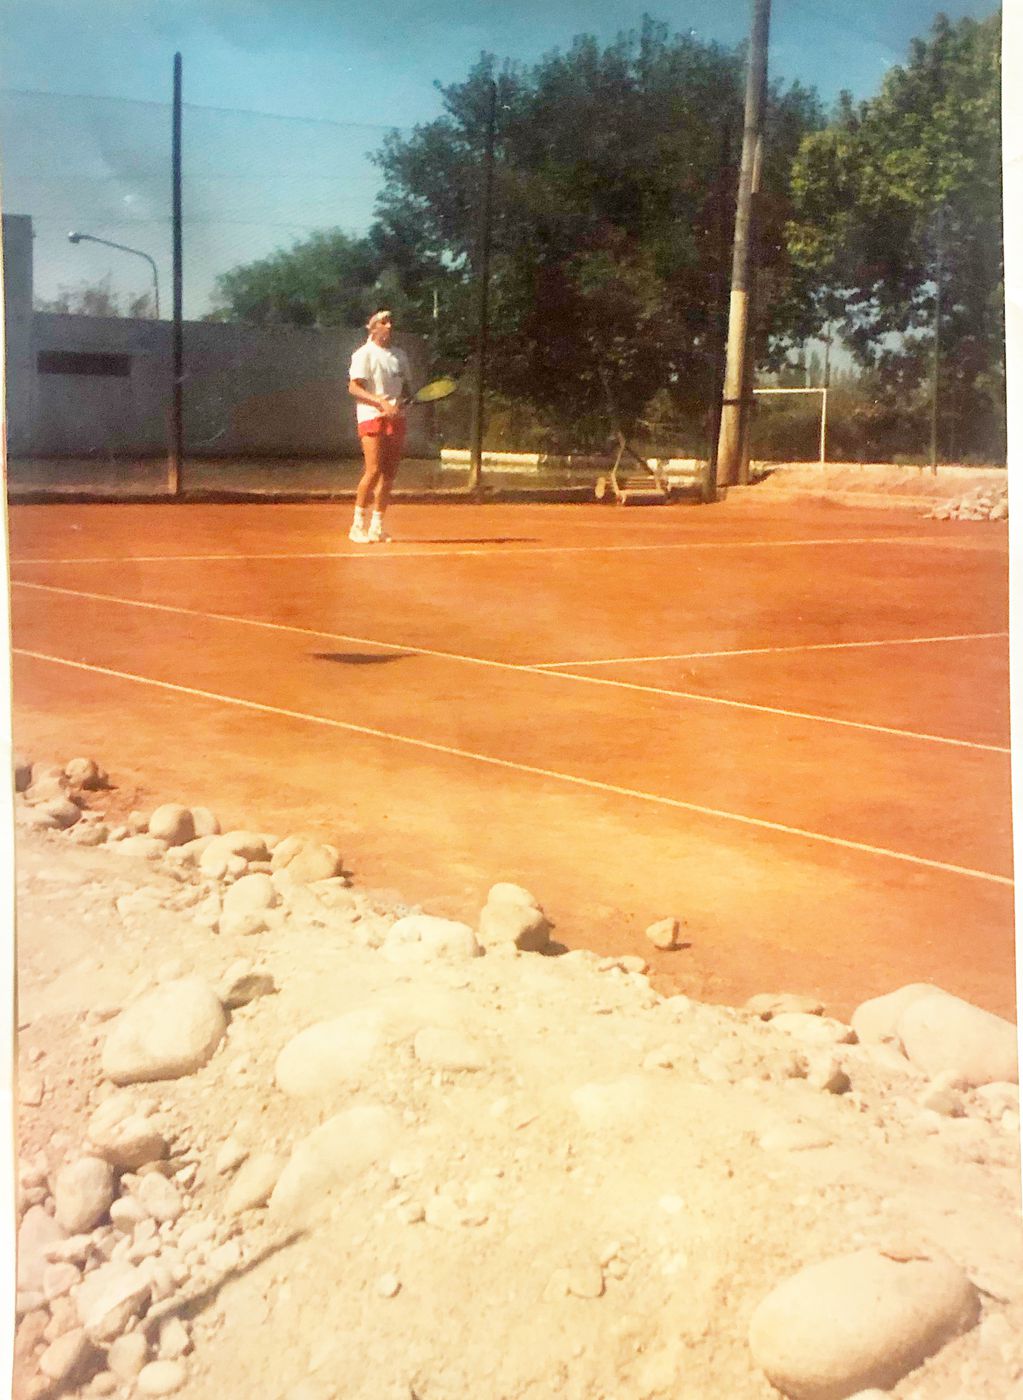 Graciela contó que volvió a jugar tenis con una amiga, después de 20 años de no tocar una raqueta. Para dar con su proyecto, volvió a entrenar.